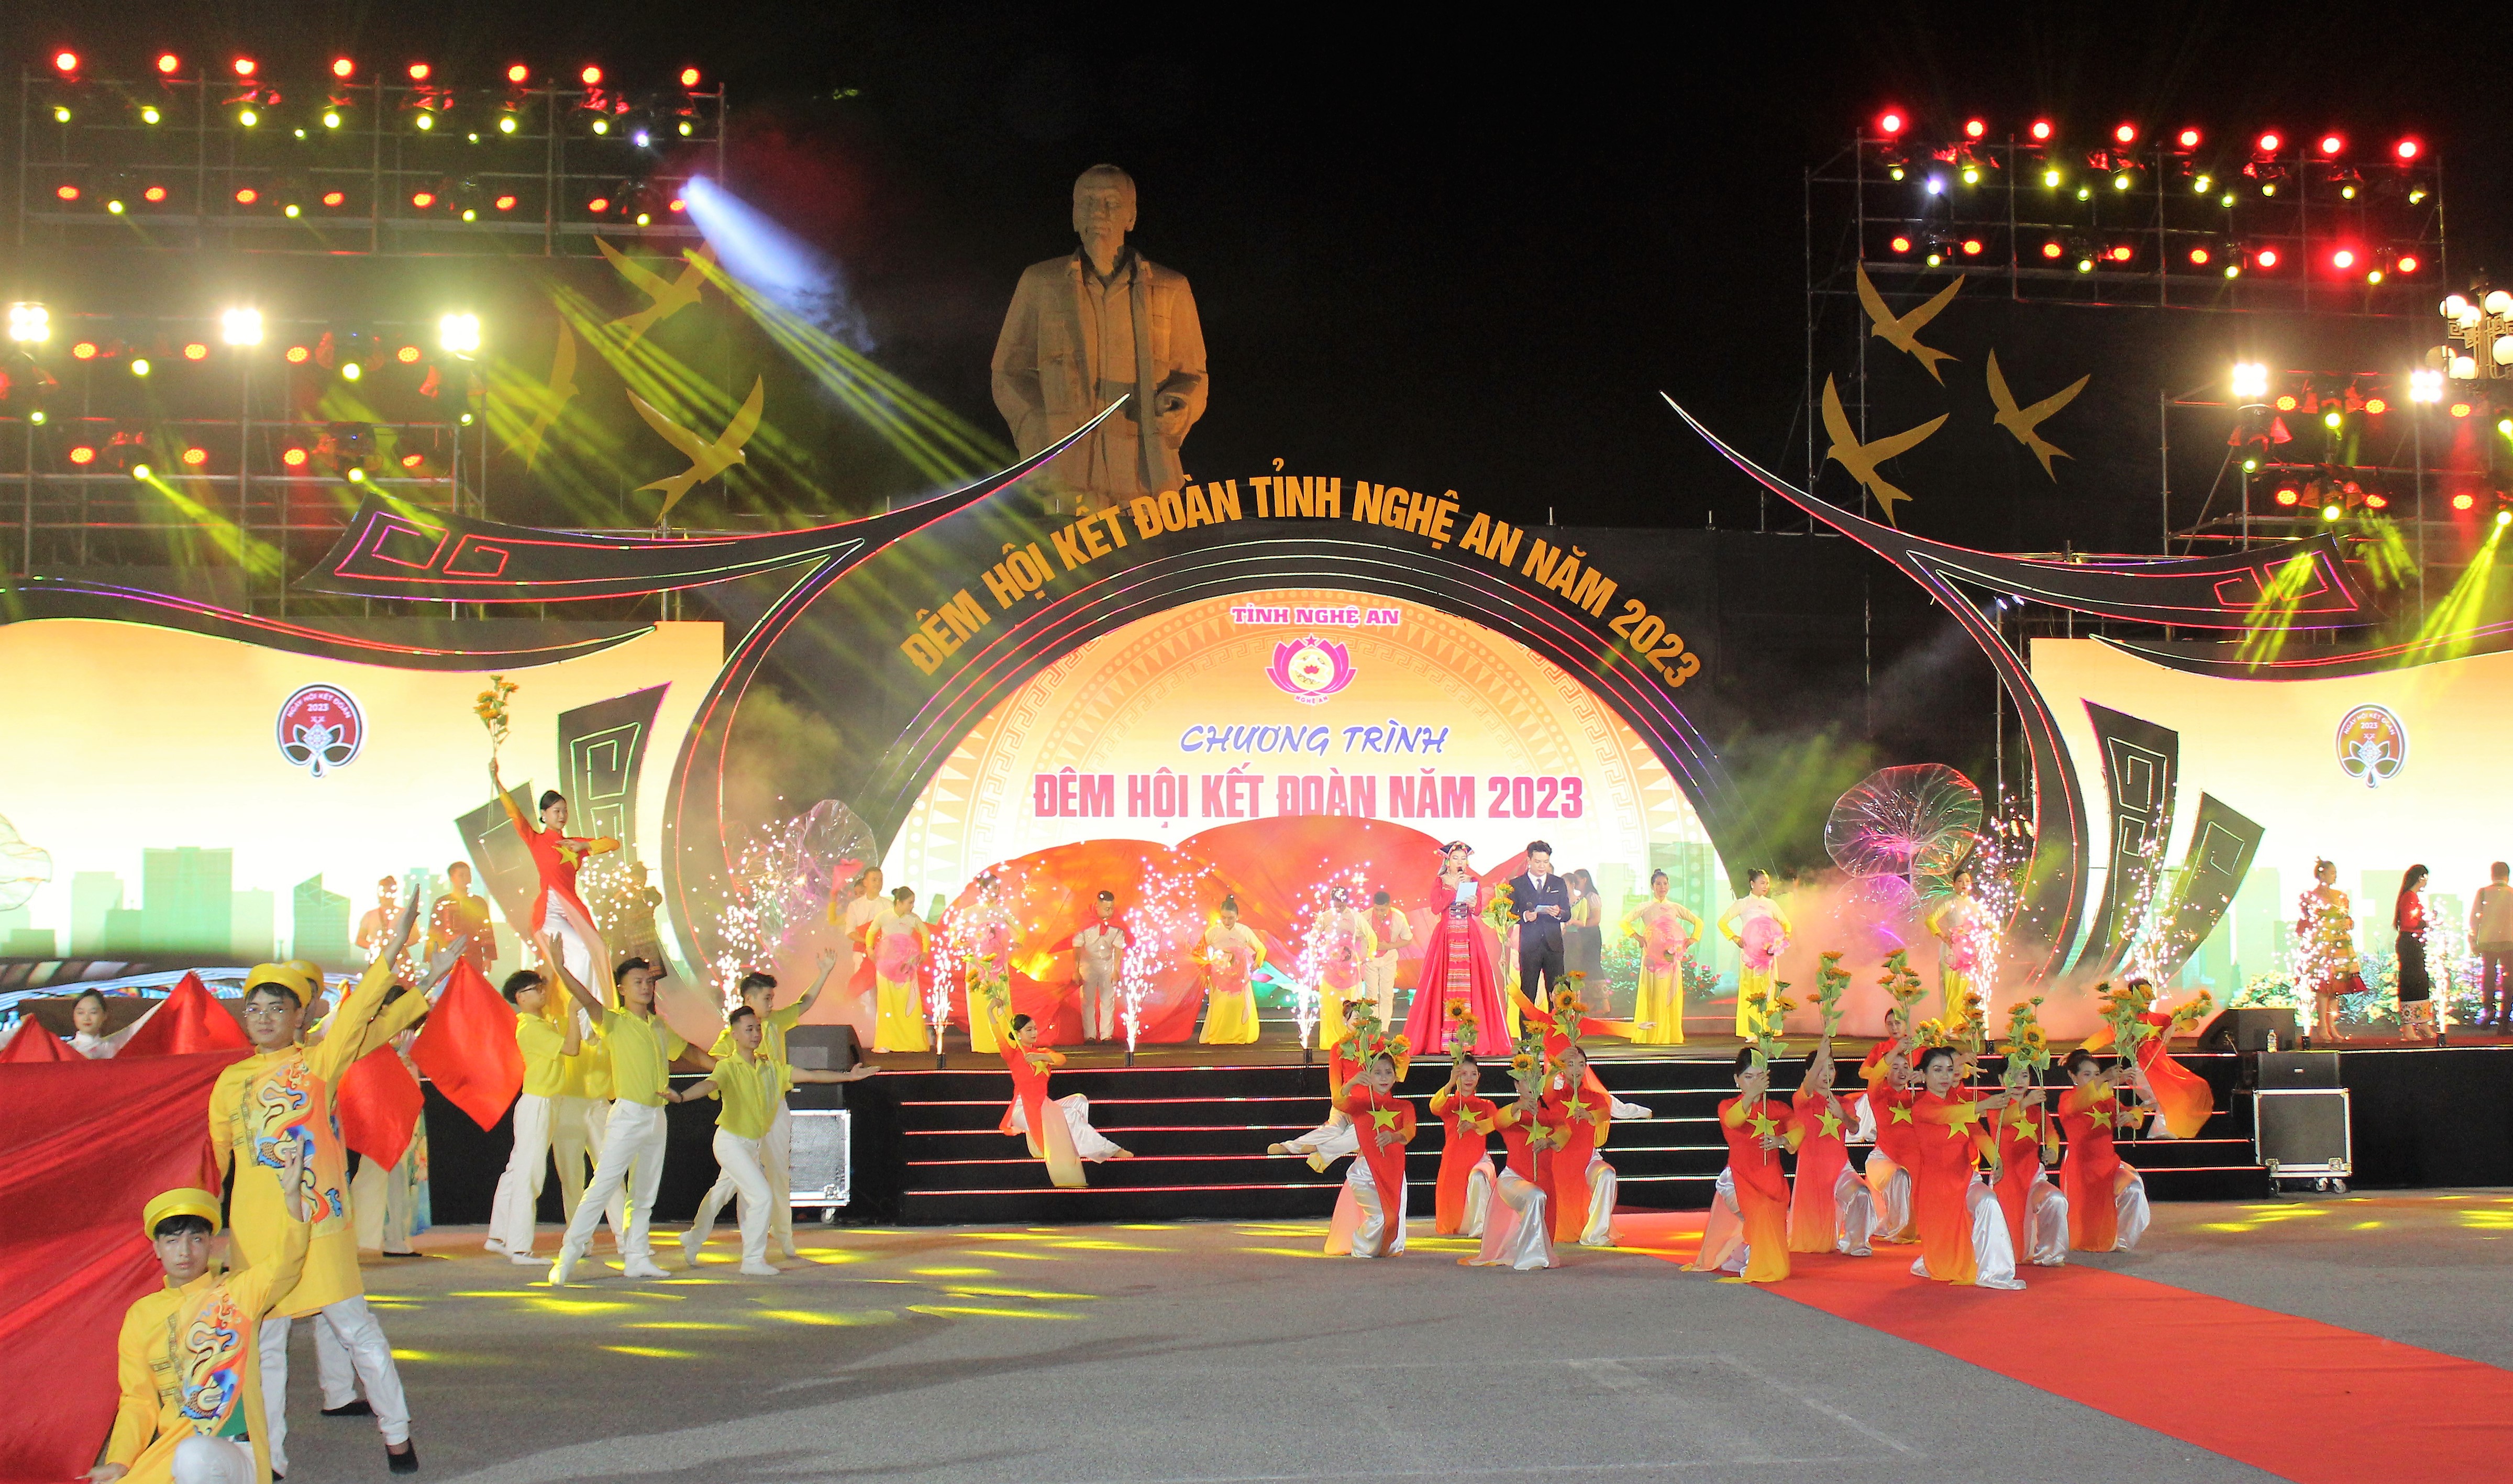 Ấn tượng Chương trình “Đêm hội kết đoàn tỉnh Nghệ An năm 2023"